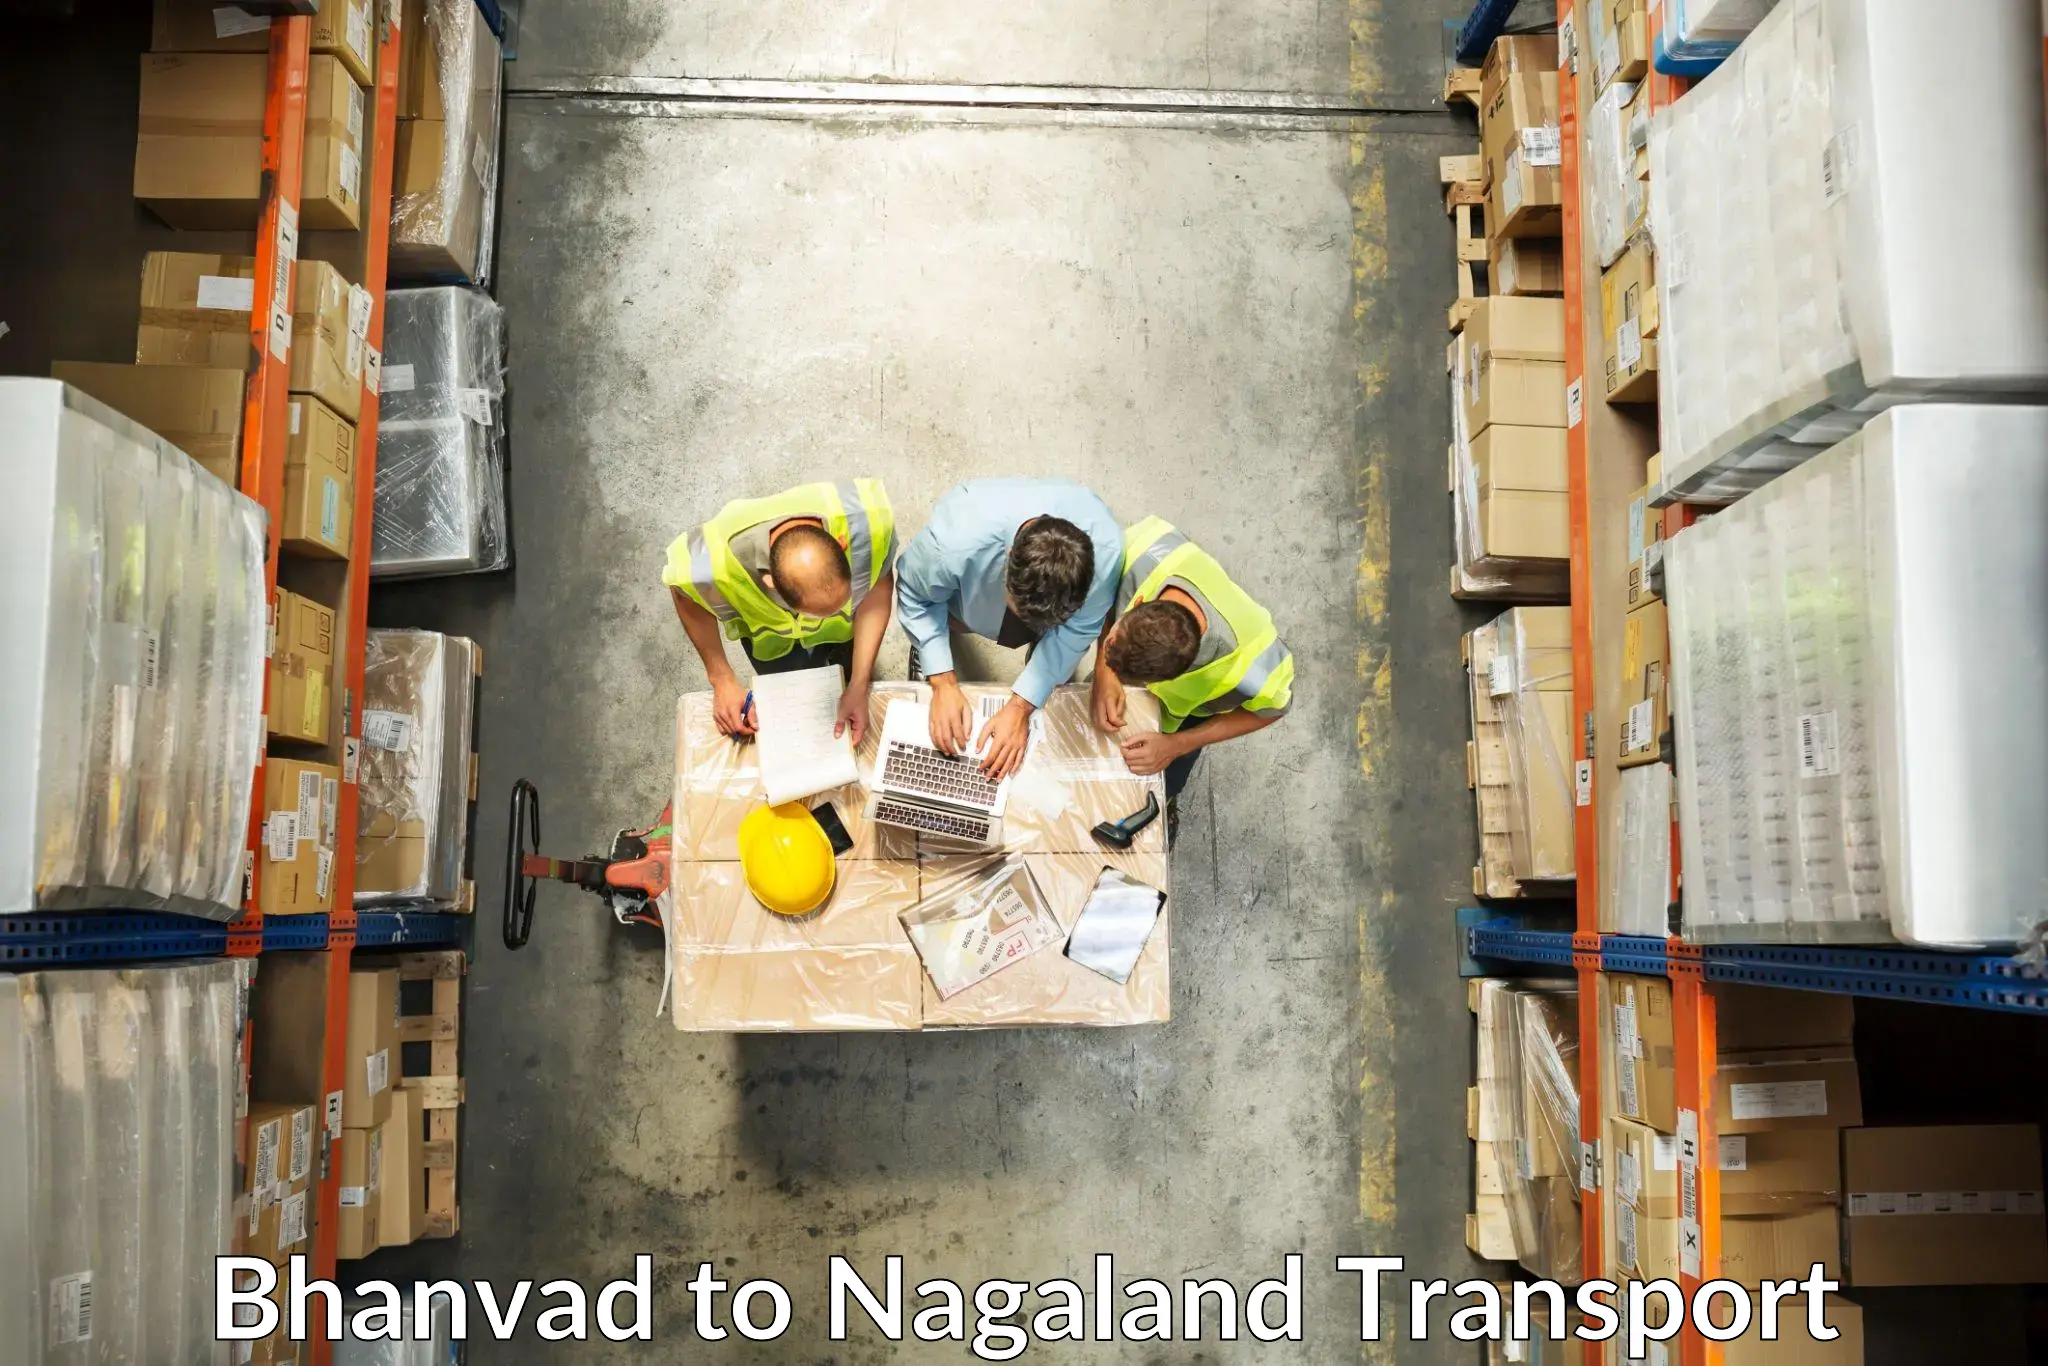 Shipping partner Bhanvad to NIT Nagaland